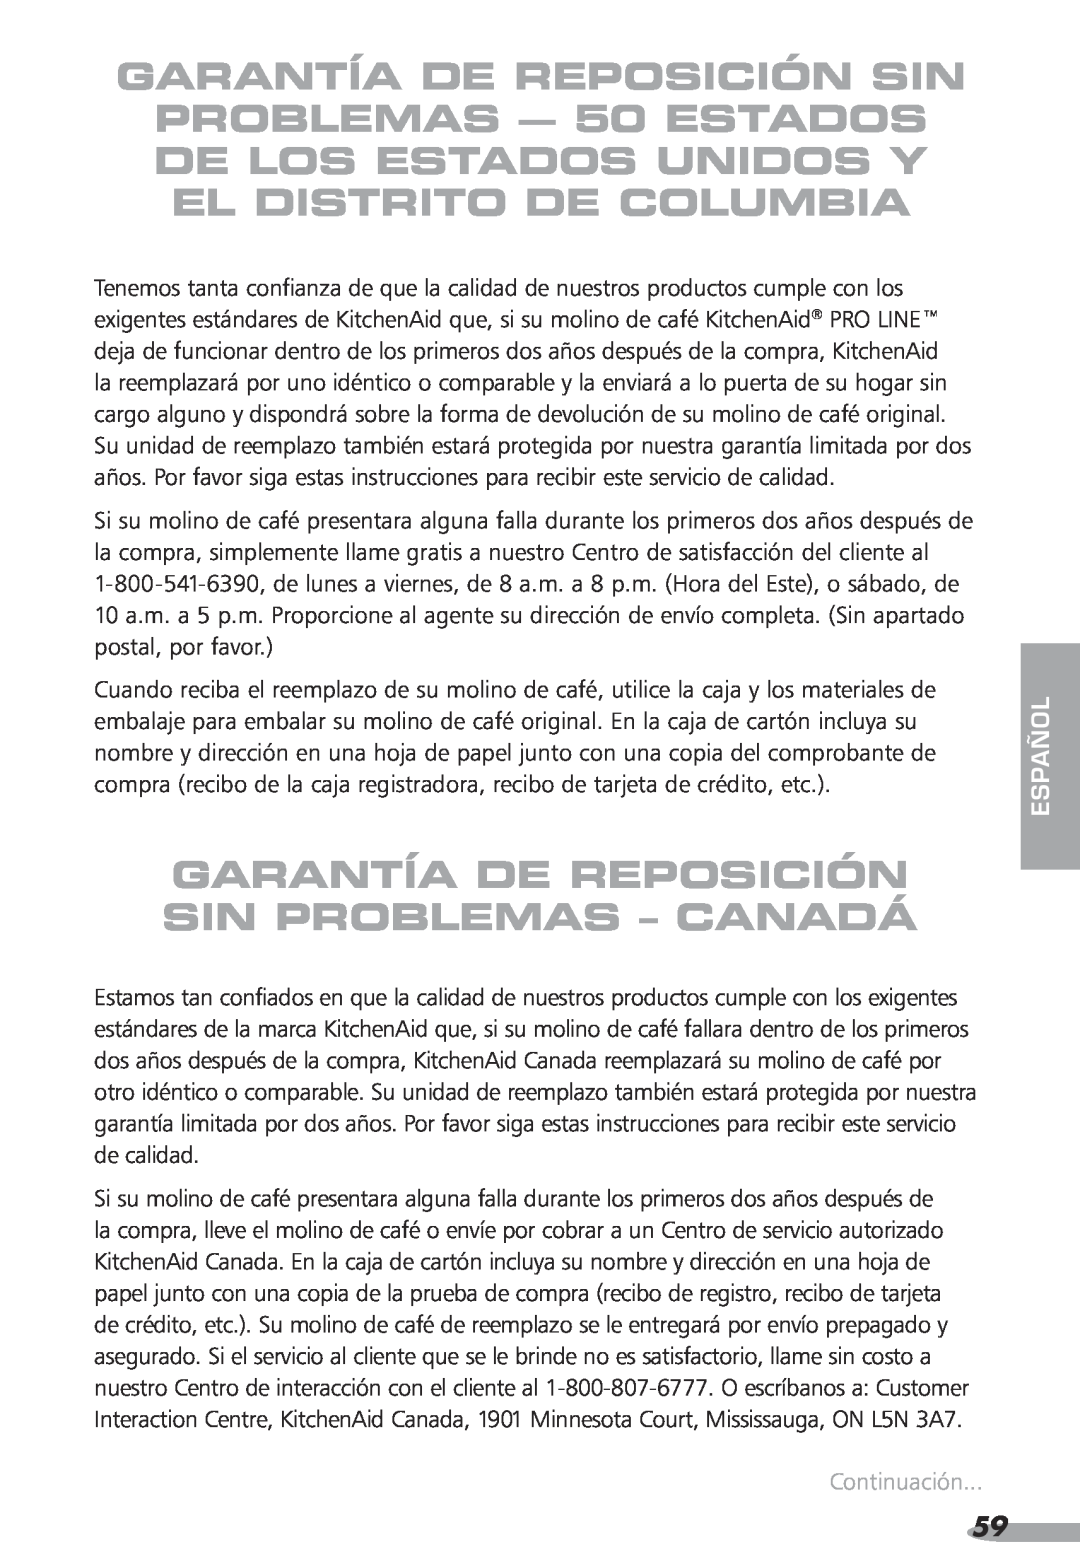 KitchenAid Coffee Grinder, KPCG100, 87, PRO LINE Garantía De Reposición Sin Problemas - Canadá, Continuación, español 